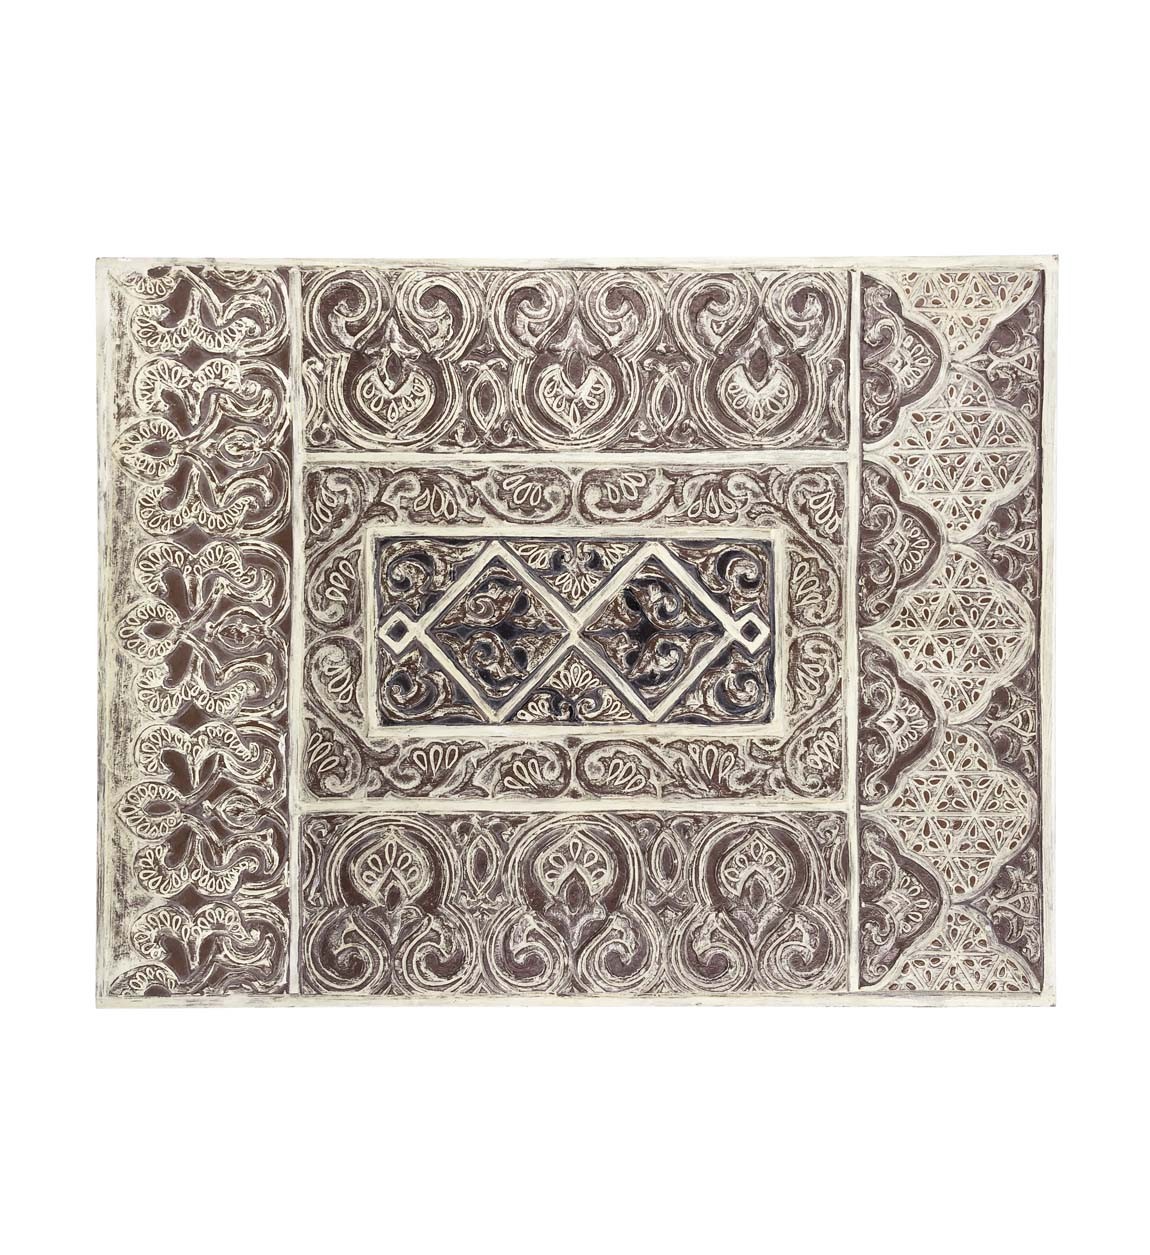 Estila Dekoračný nástenný panel Moletto obdĺžnikového tvaru v štýle etno v svetlých hnedých odtieňoch 90cm